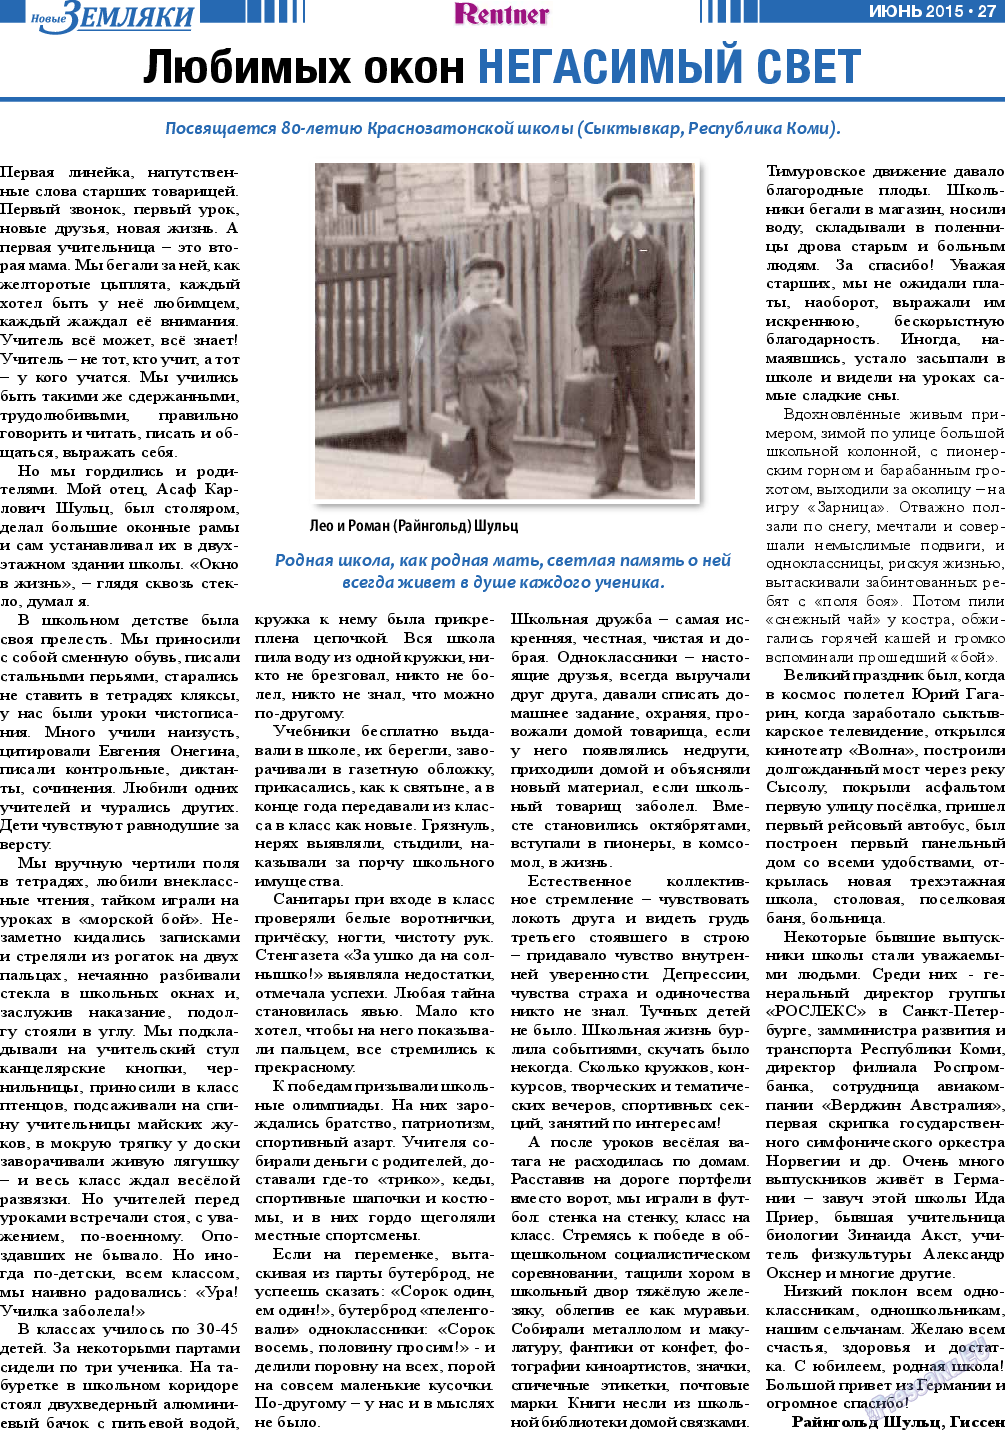 Новые Земляки (газета). 2015 год, номер 6, стр. 27